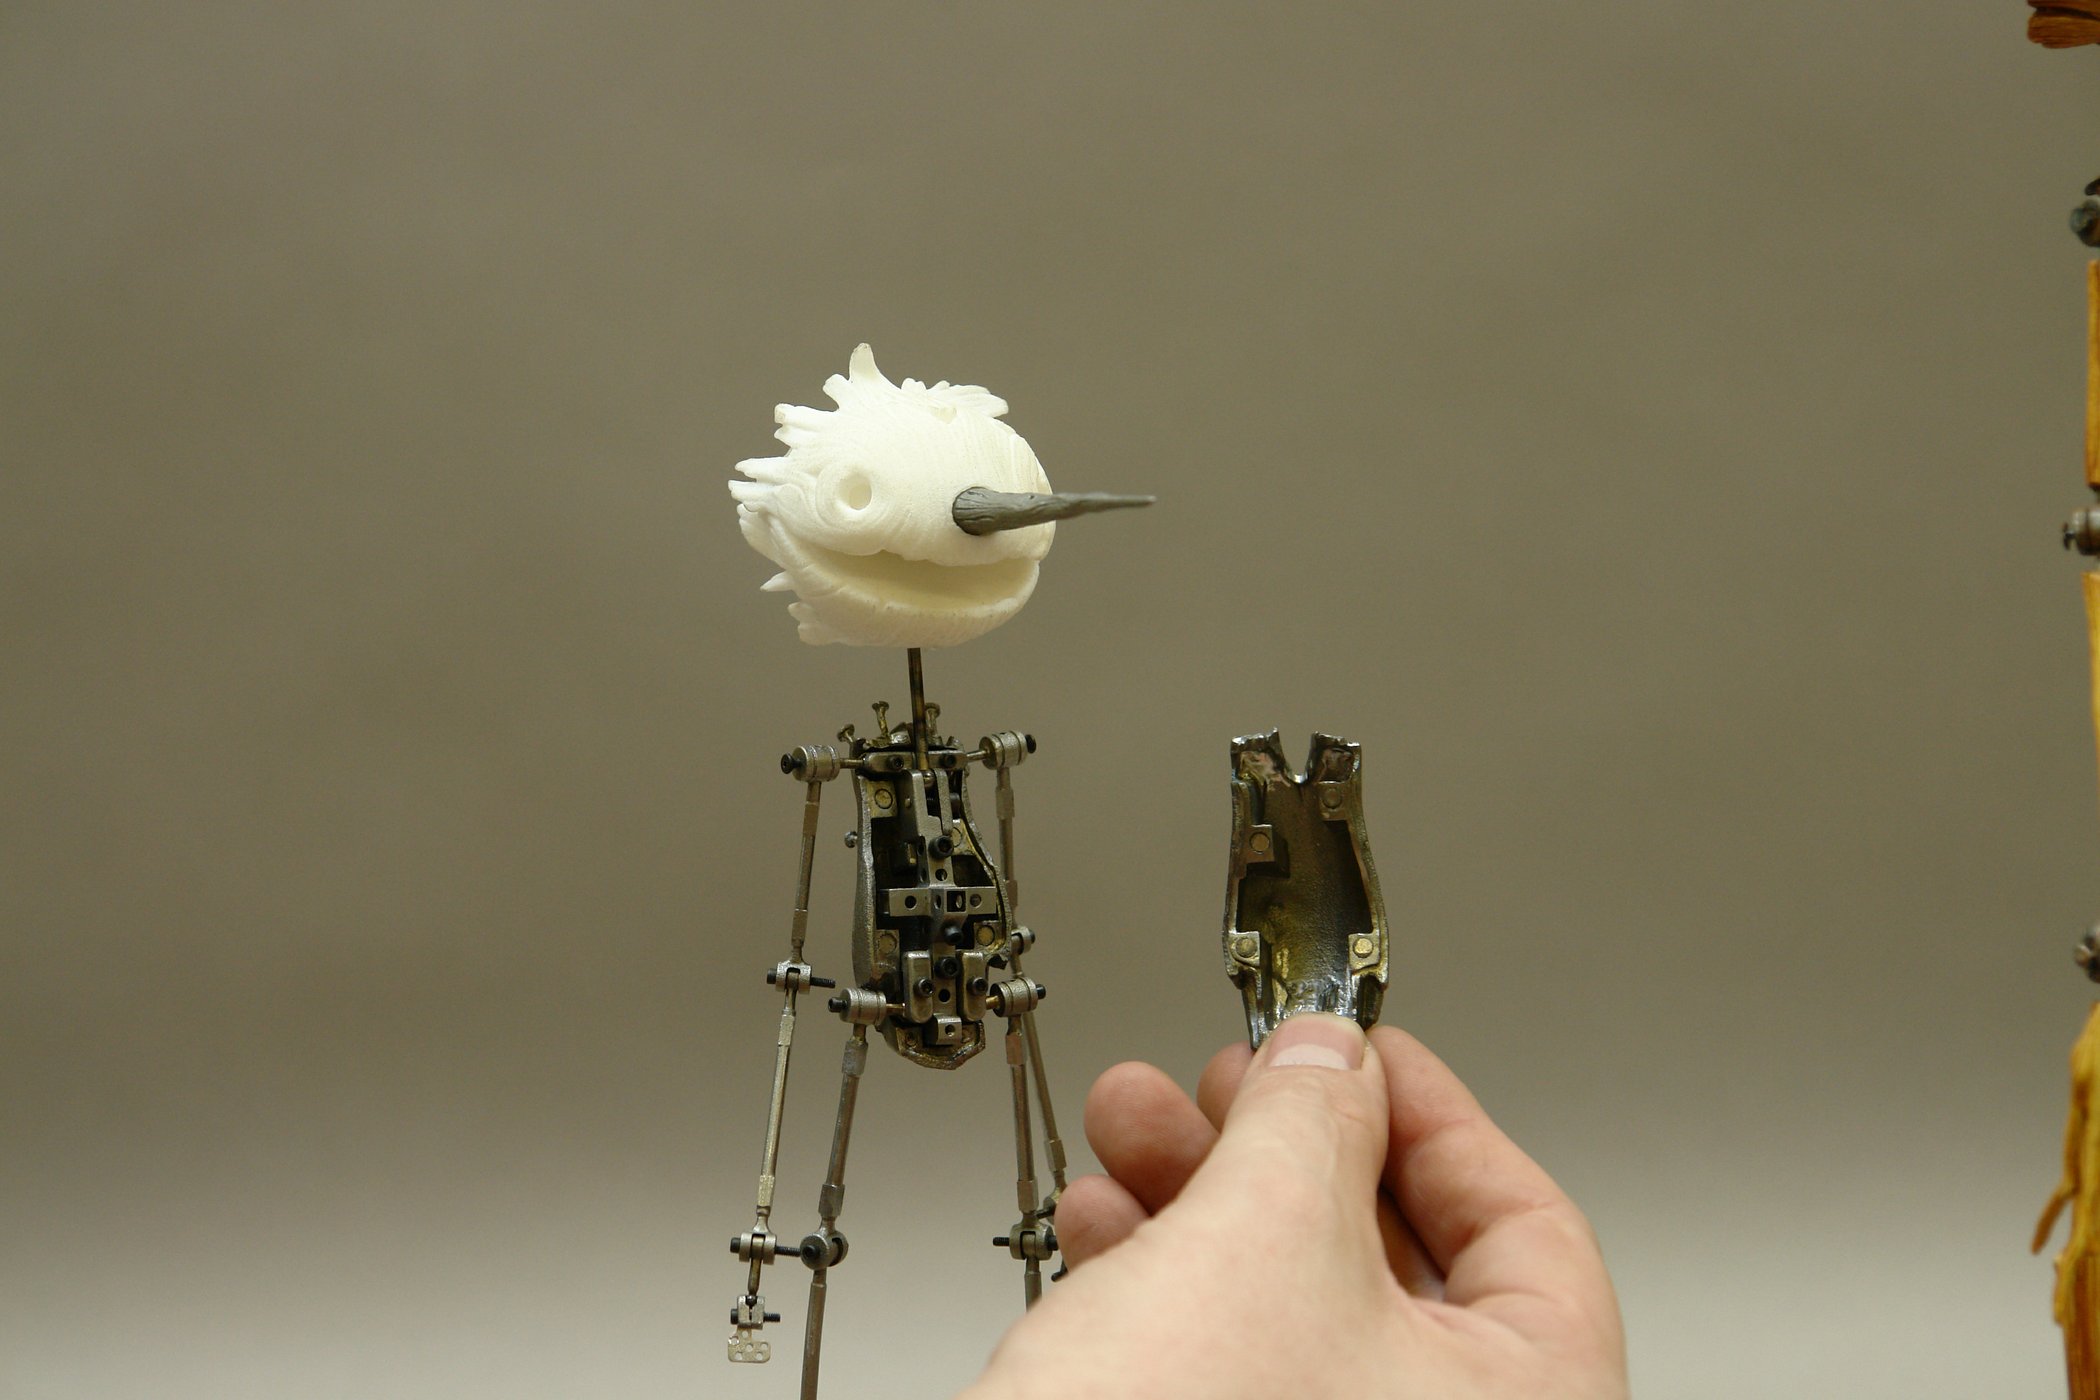  Кукла Пиноккио с 3D-печатными элементами